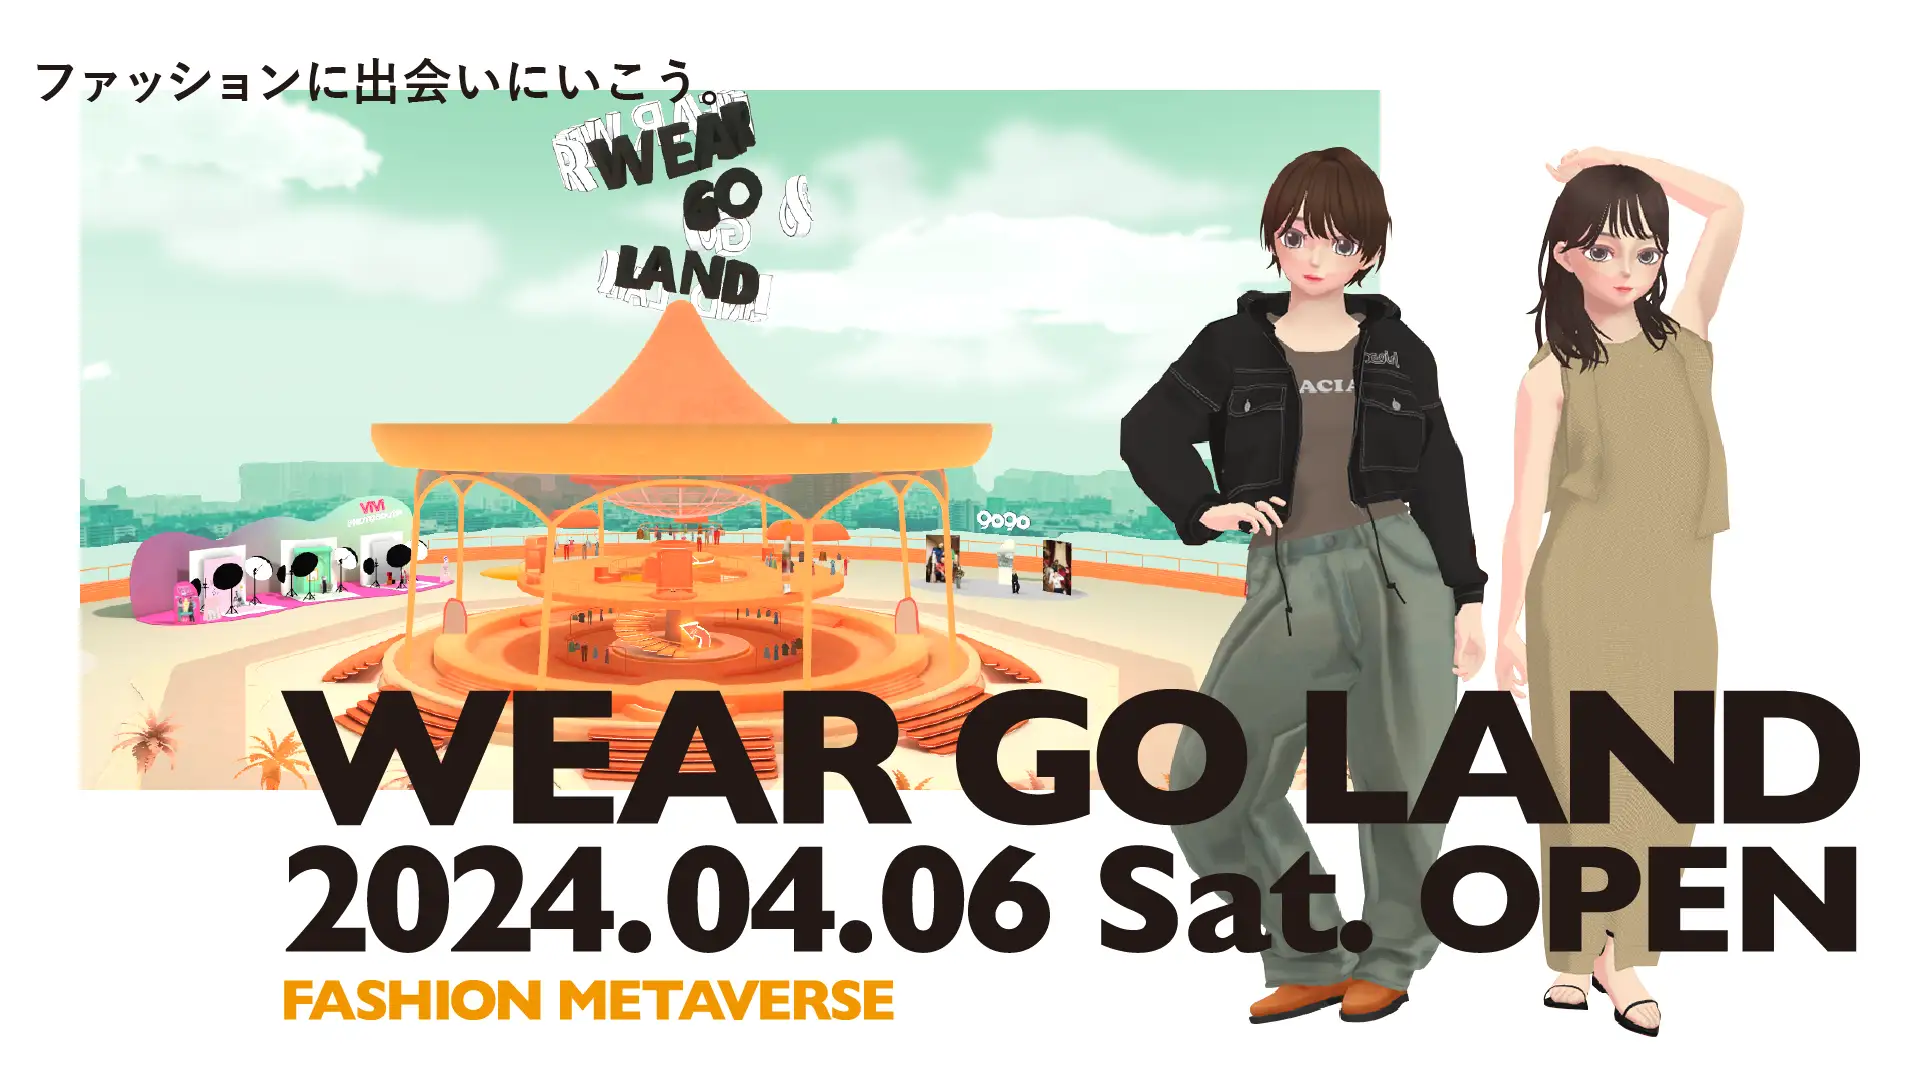 メタバースで展開される『WEAR GO LAND』- 次世代のデジタルファッションモール